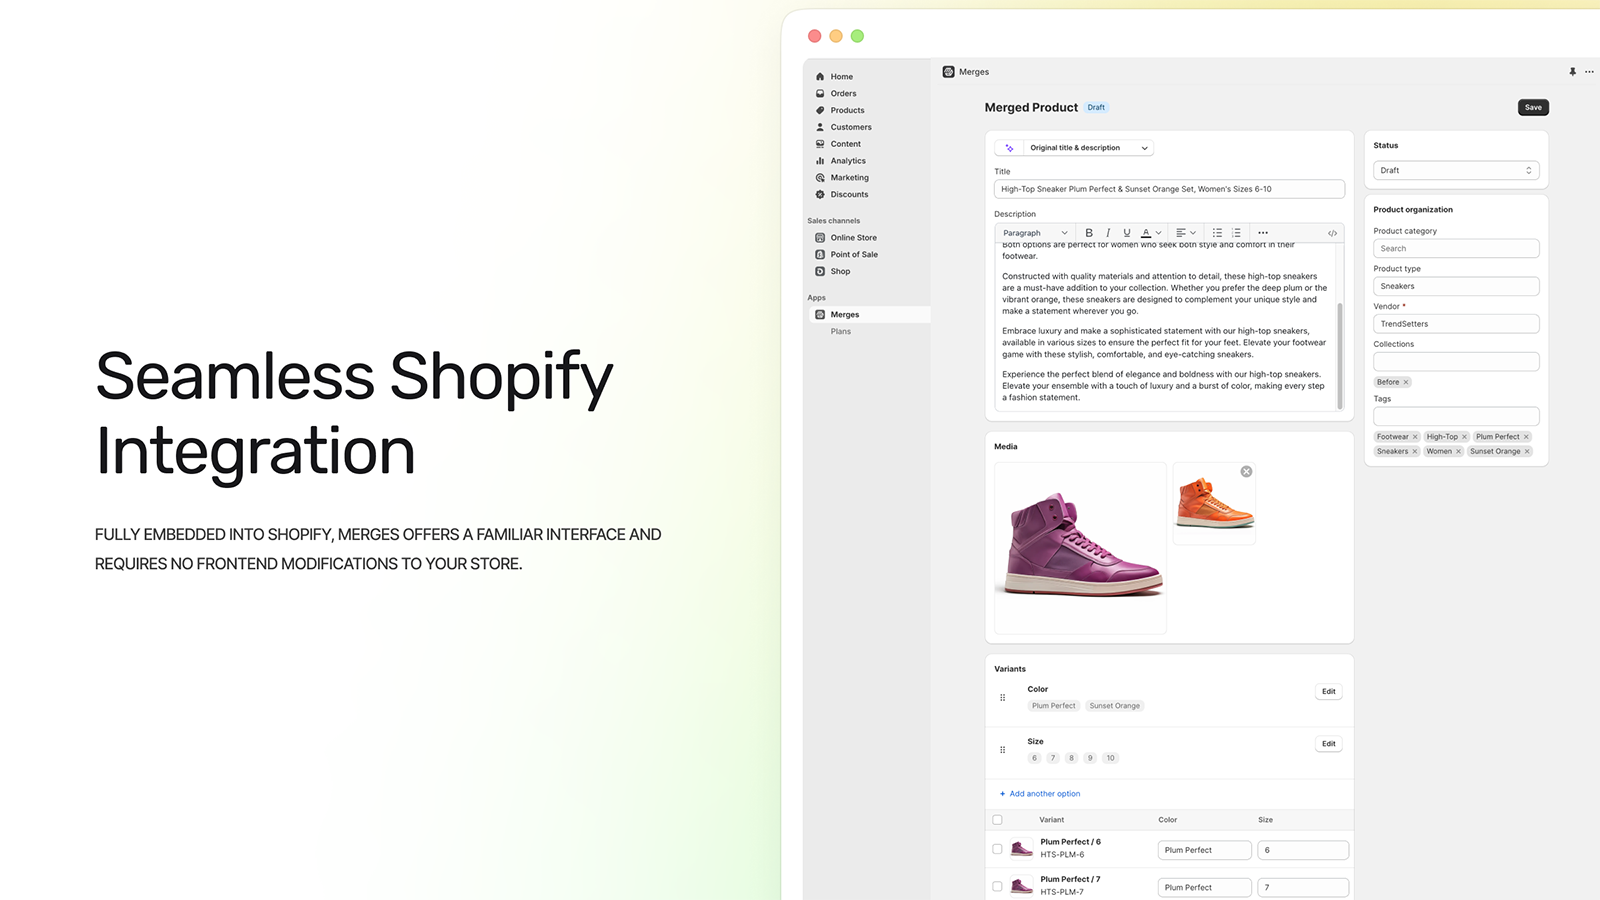 App totalmente incorporado à experiência Shopify